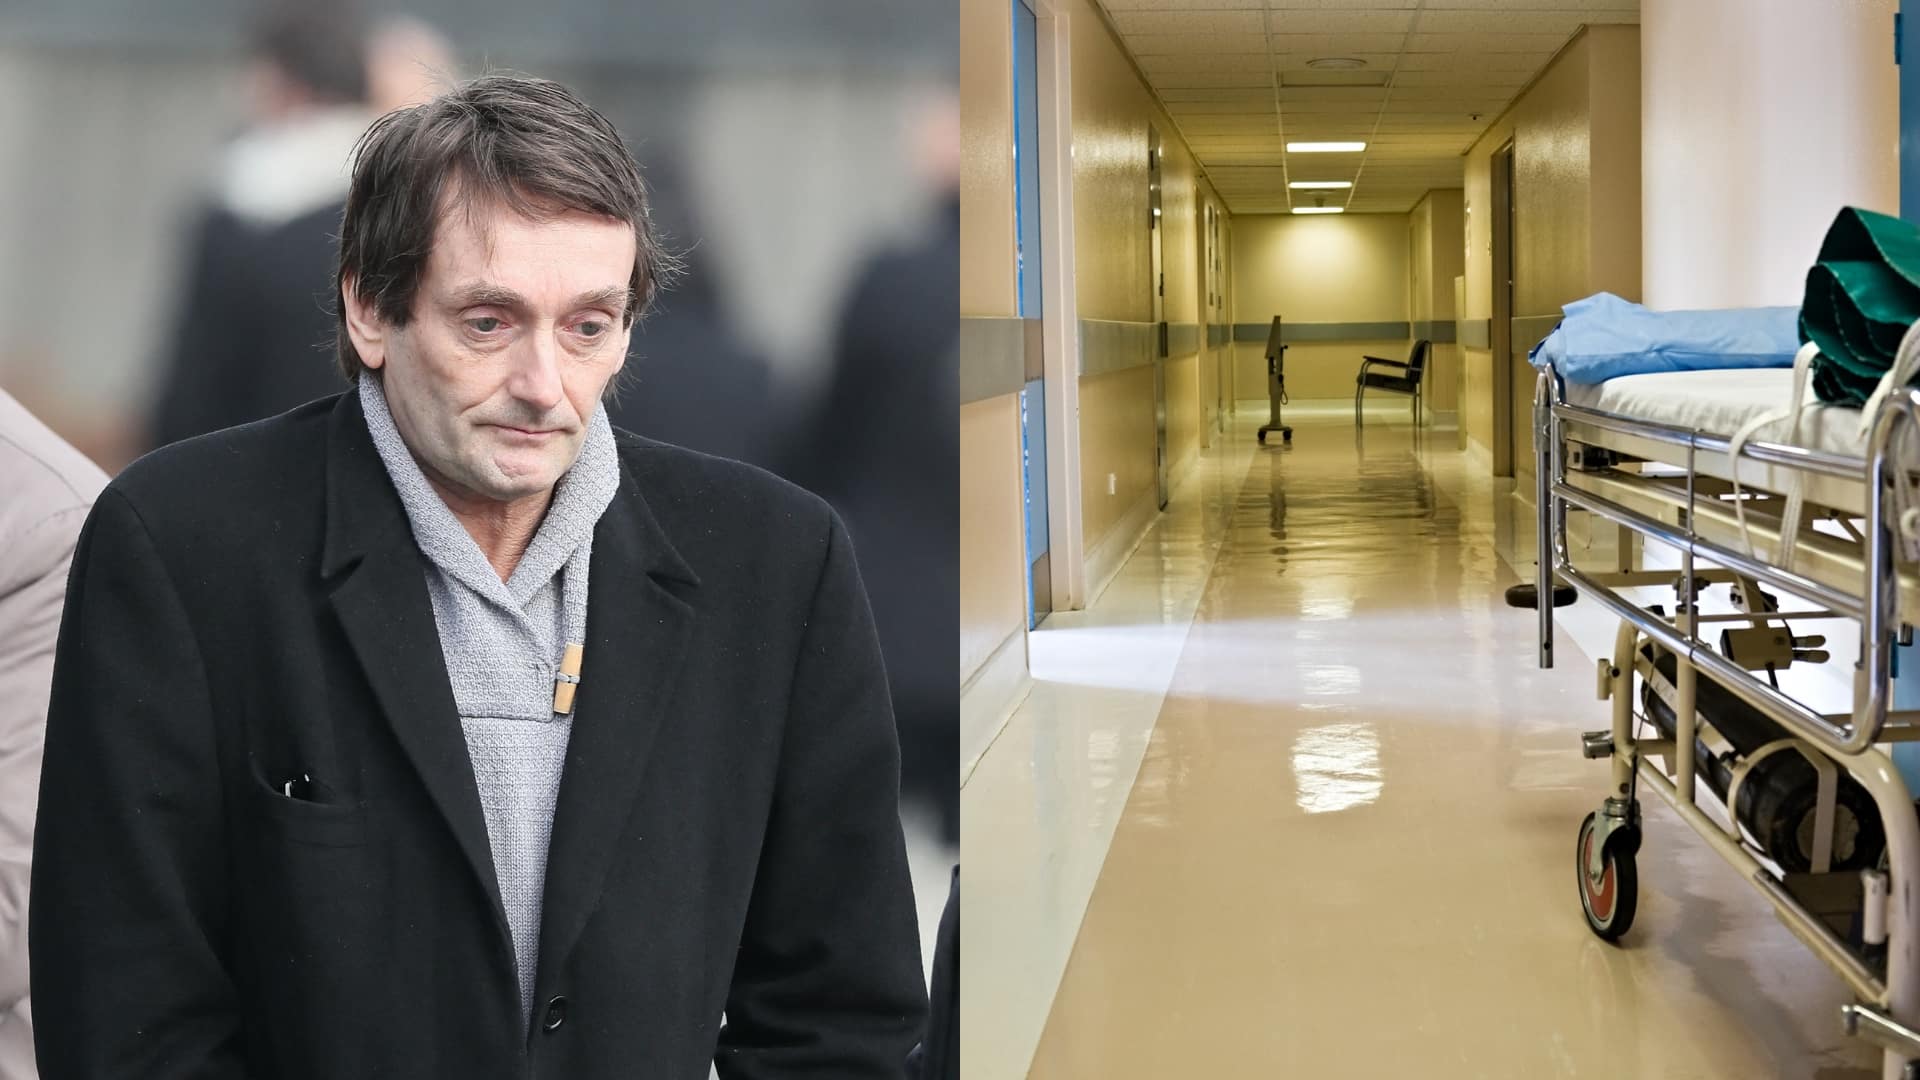 Pierre Palmade de retour à l'hôpital : des témoins se livrent sur son comportement